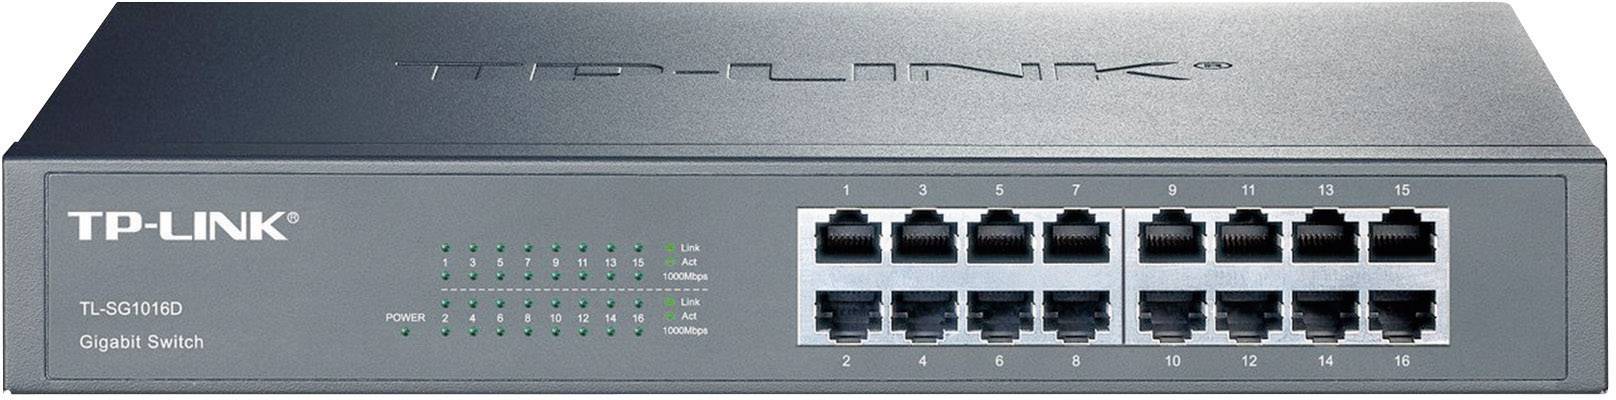 TP-LINK 16-Port Gigabit Switch Unmanaged 13\"